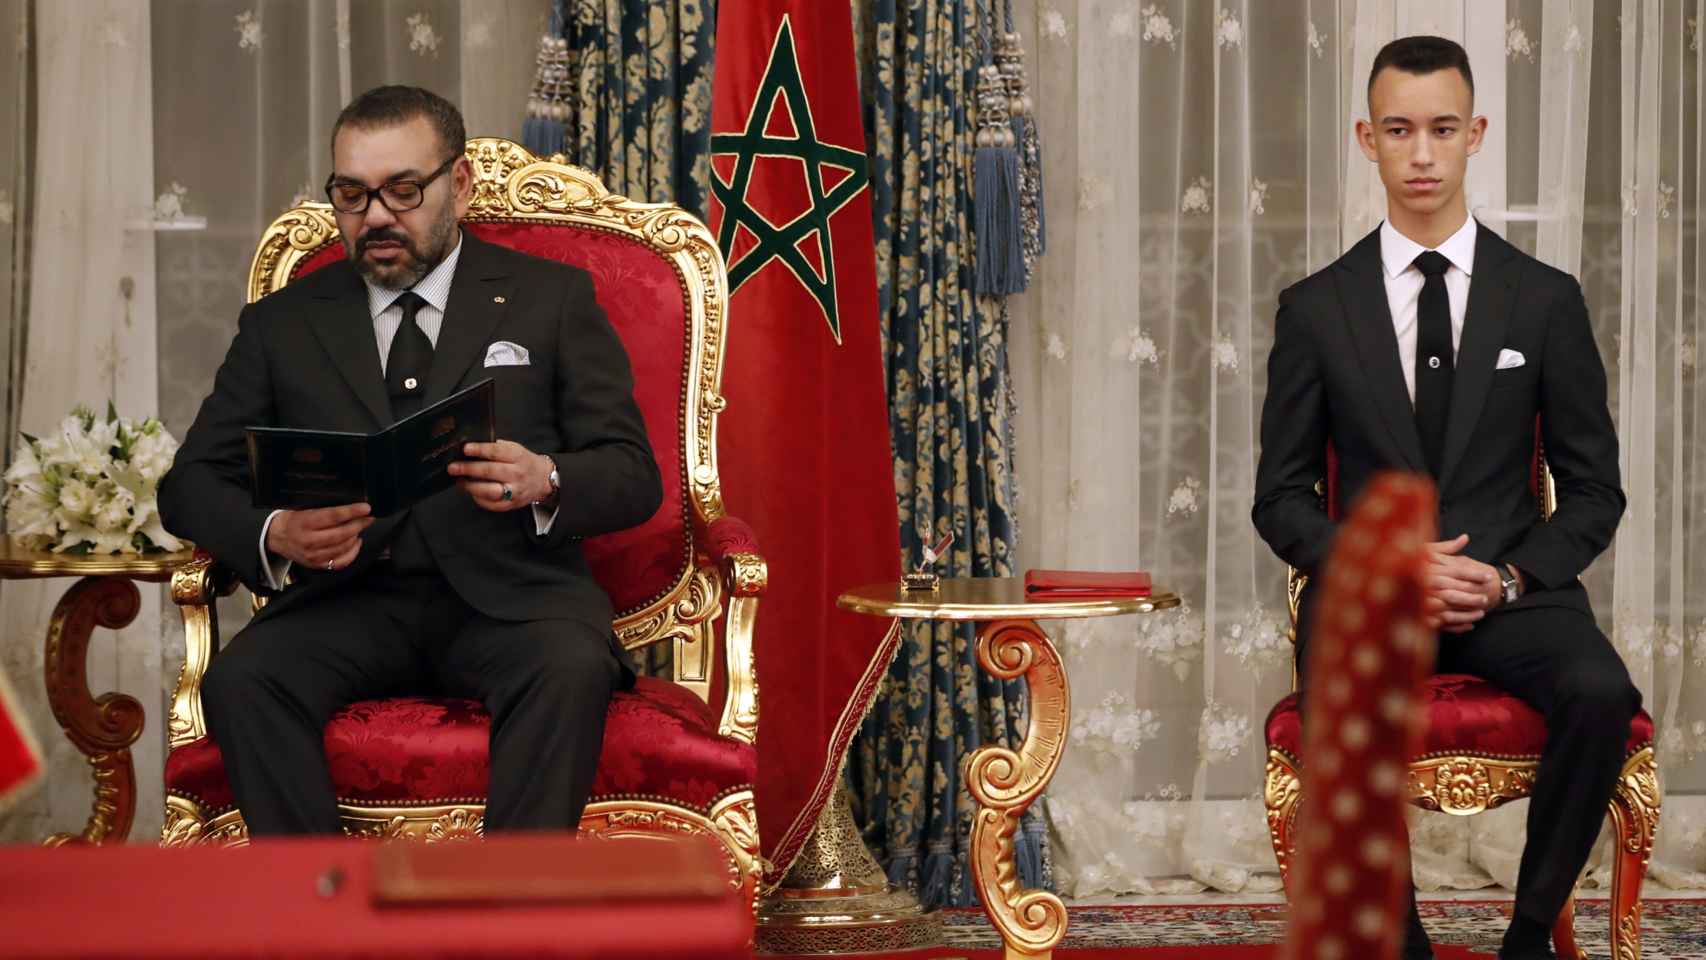 Mohamed VI con su hijo el heredero Moulay Hassan.